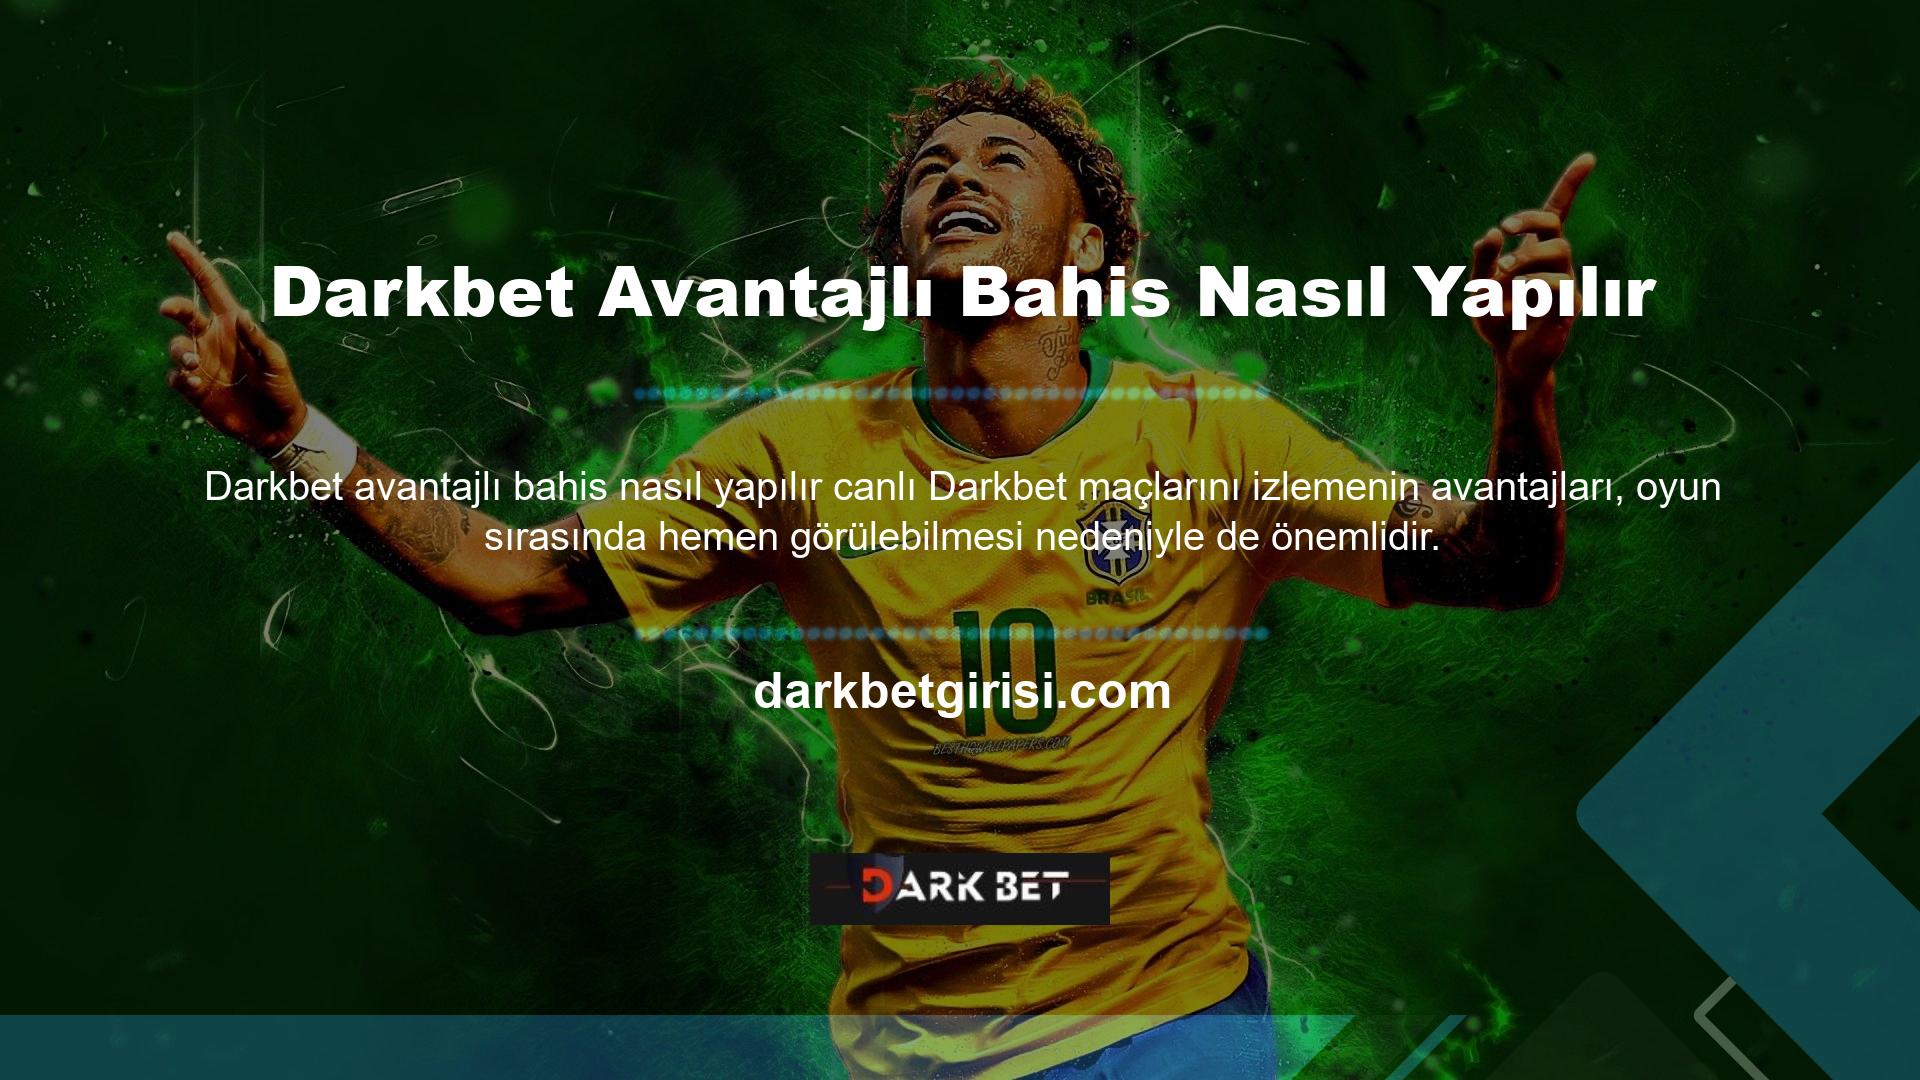 Darkbet web sitesi sadece bahis heyecanını değil aynı zamanda canlı izleme heyecanını da sunmaktadır